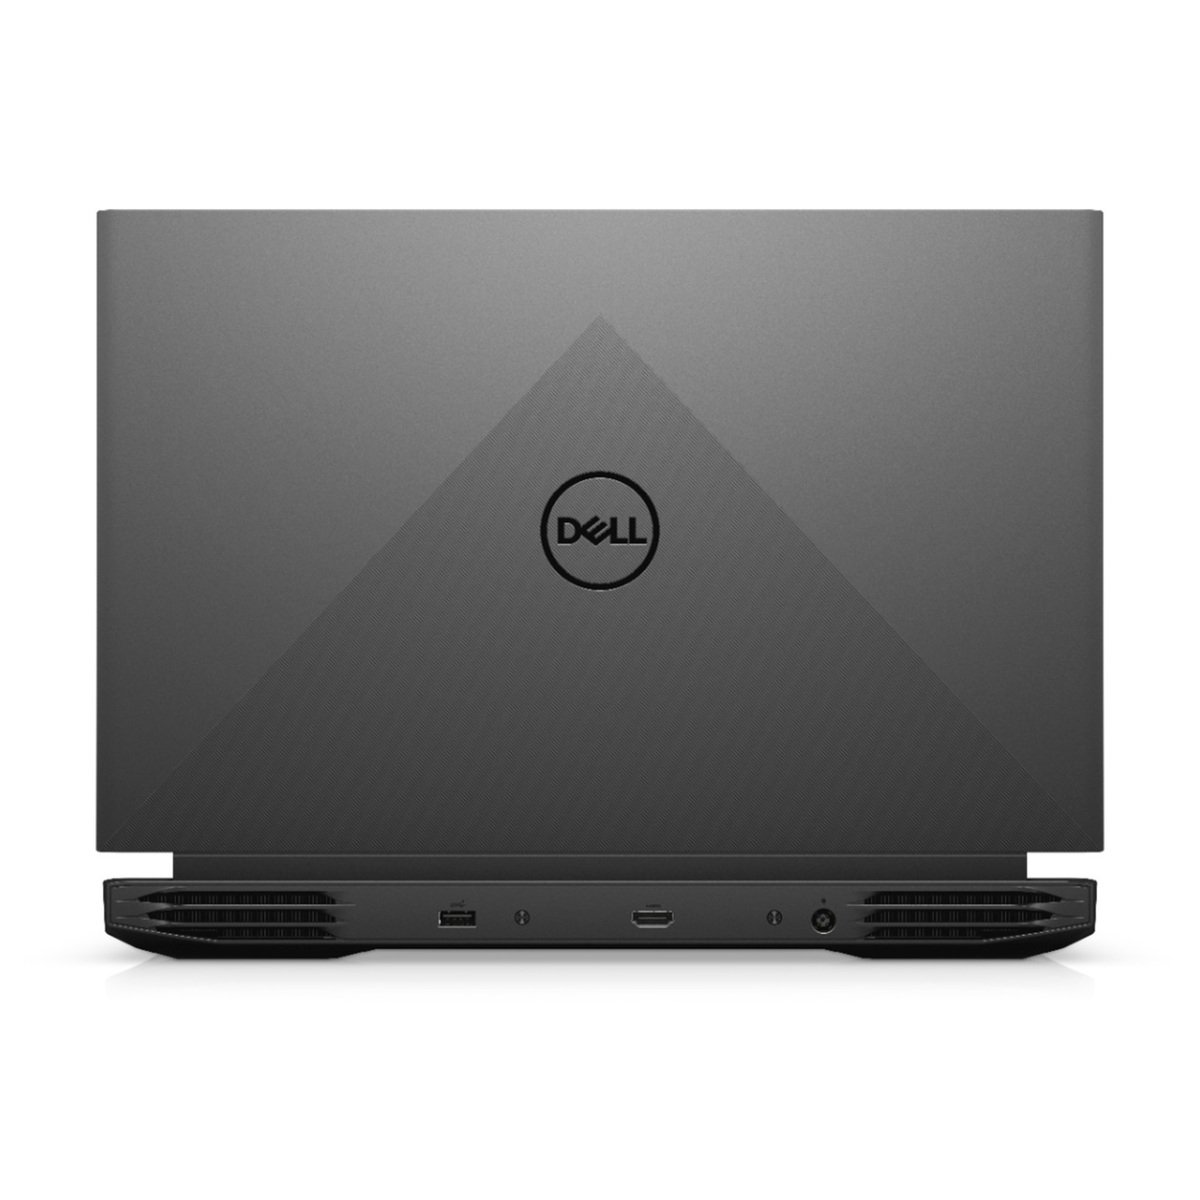 Dell G15-5510 Gaming Notebook 10th Gen Intel Core i5-10500H, 8GB RAM, 256GB SSD, 15.6inch FHD, 120Hz, NVIDIA GeForce GTX 1650 4GB GDDR6, Windows 11 Home, Dark Shadow Grey